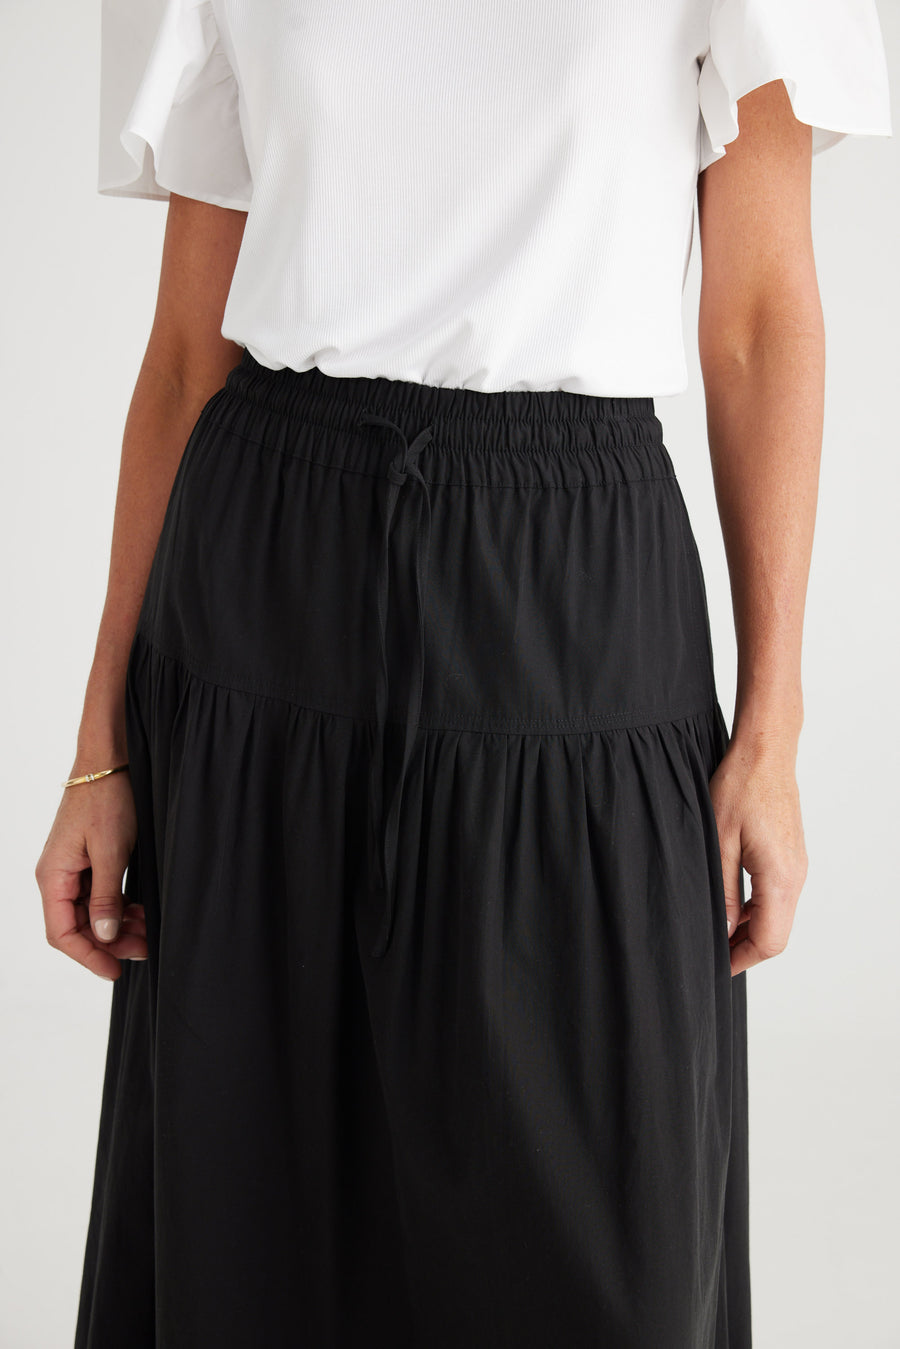 Provence Skirt - Black